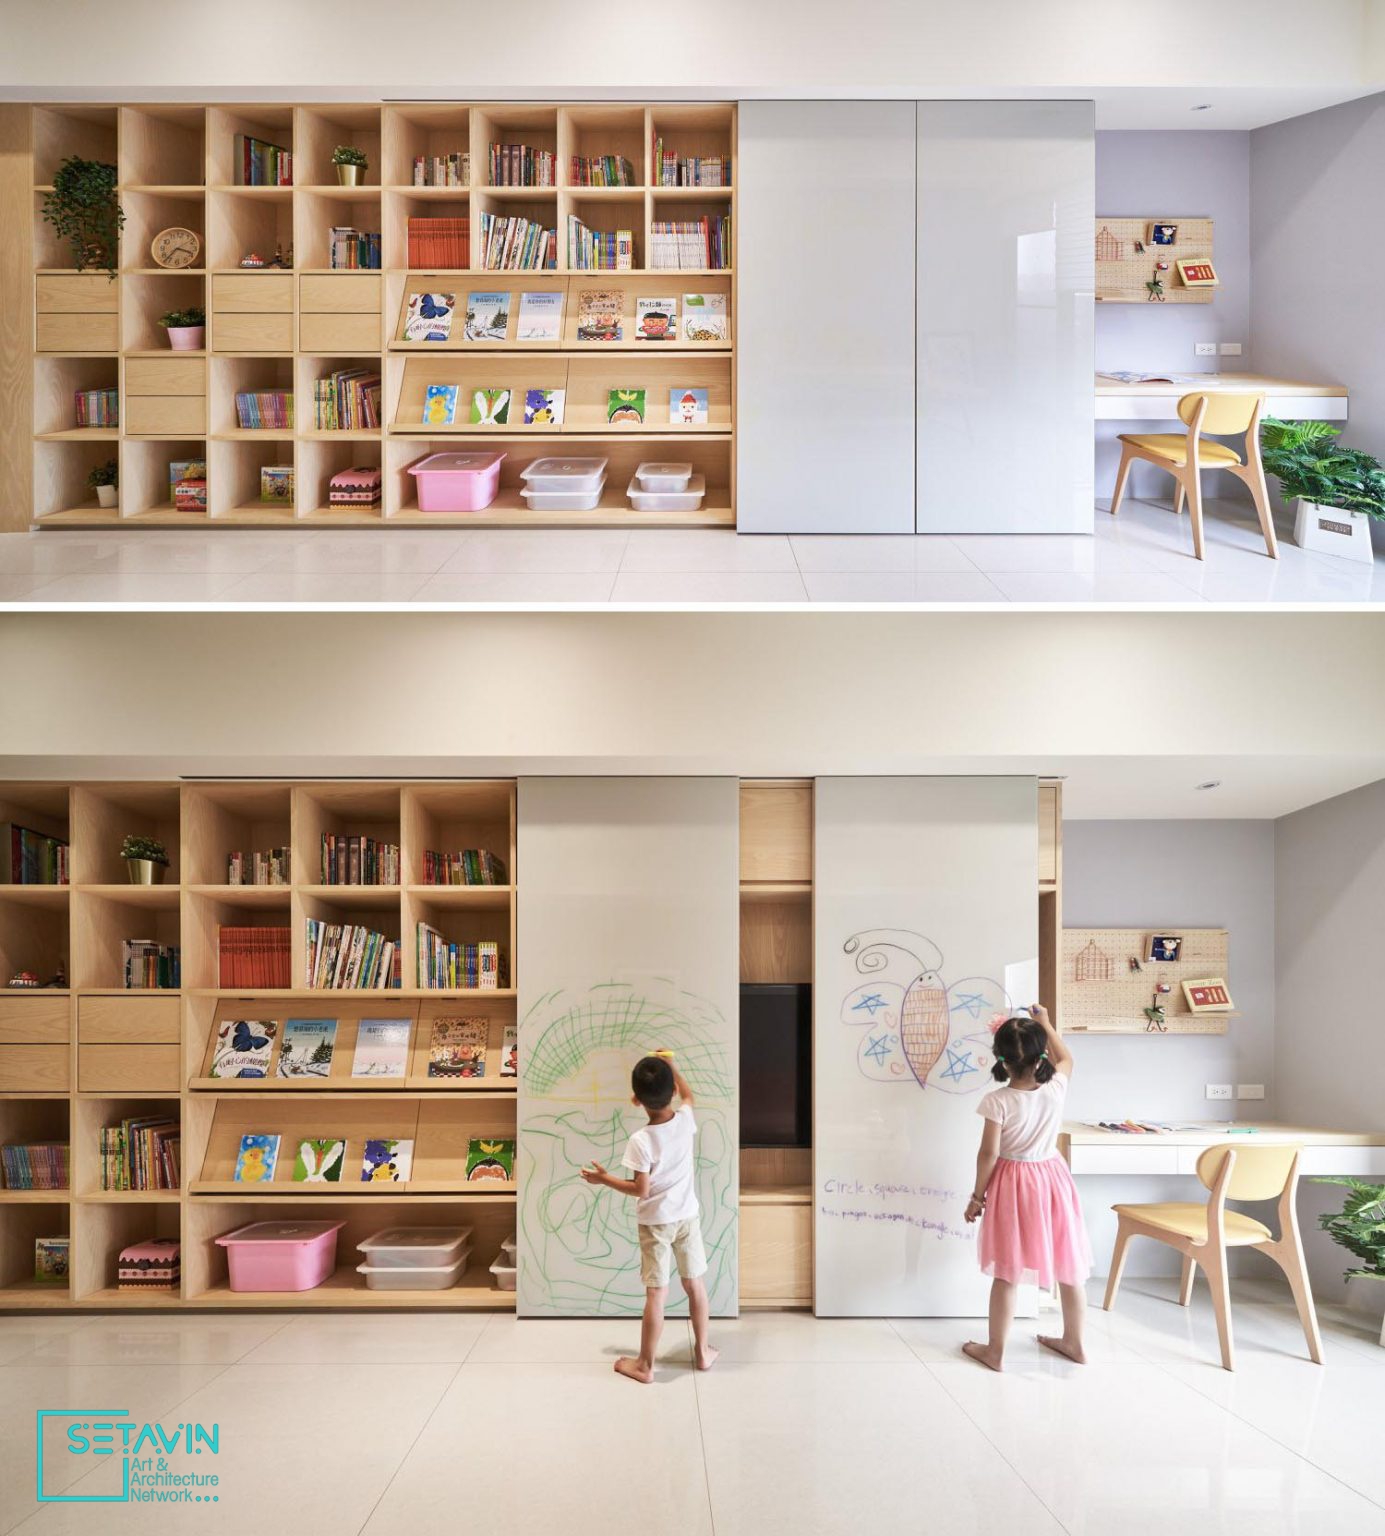 وایت برد کشویی ویژگی اصلی طراحی اتاق کودک در این آپارتمان